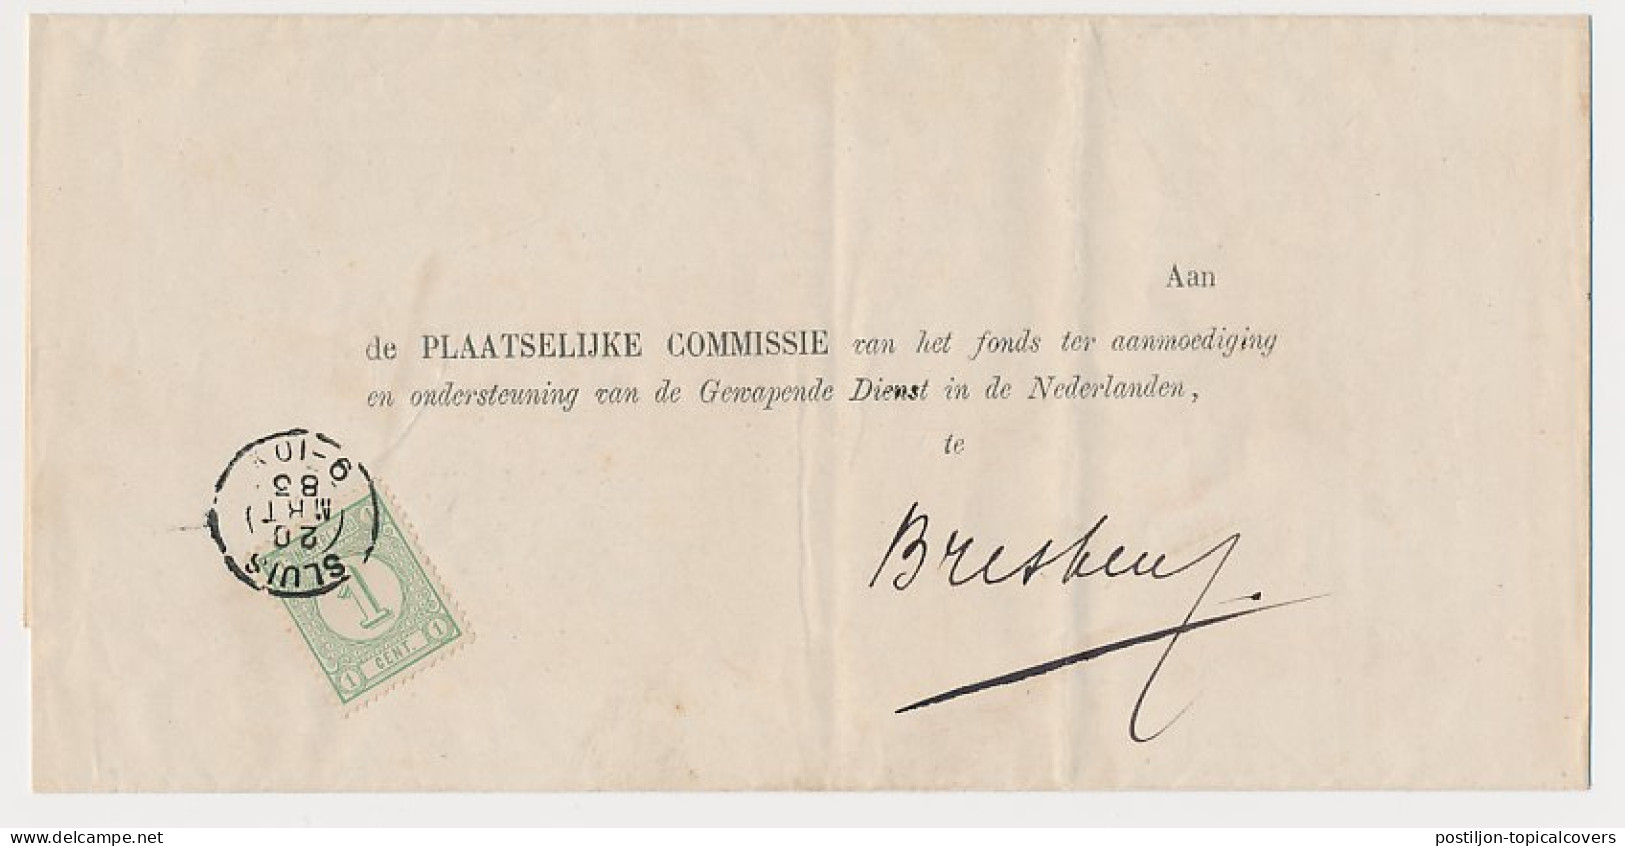 Em. 1876 Sluis - Breskens - Compleet Drukwerk - Lettres & Documents